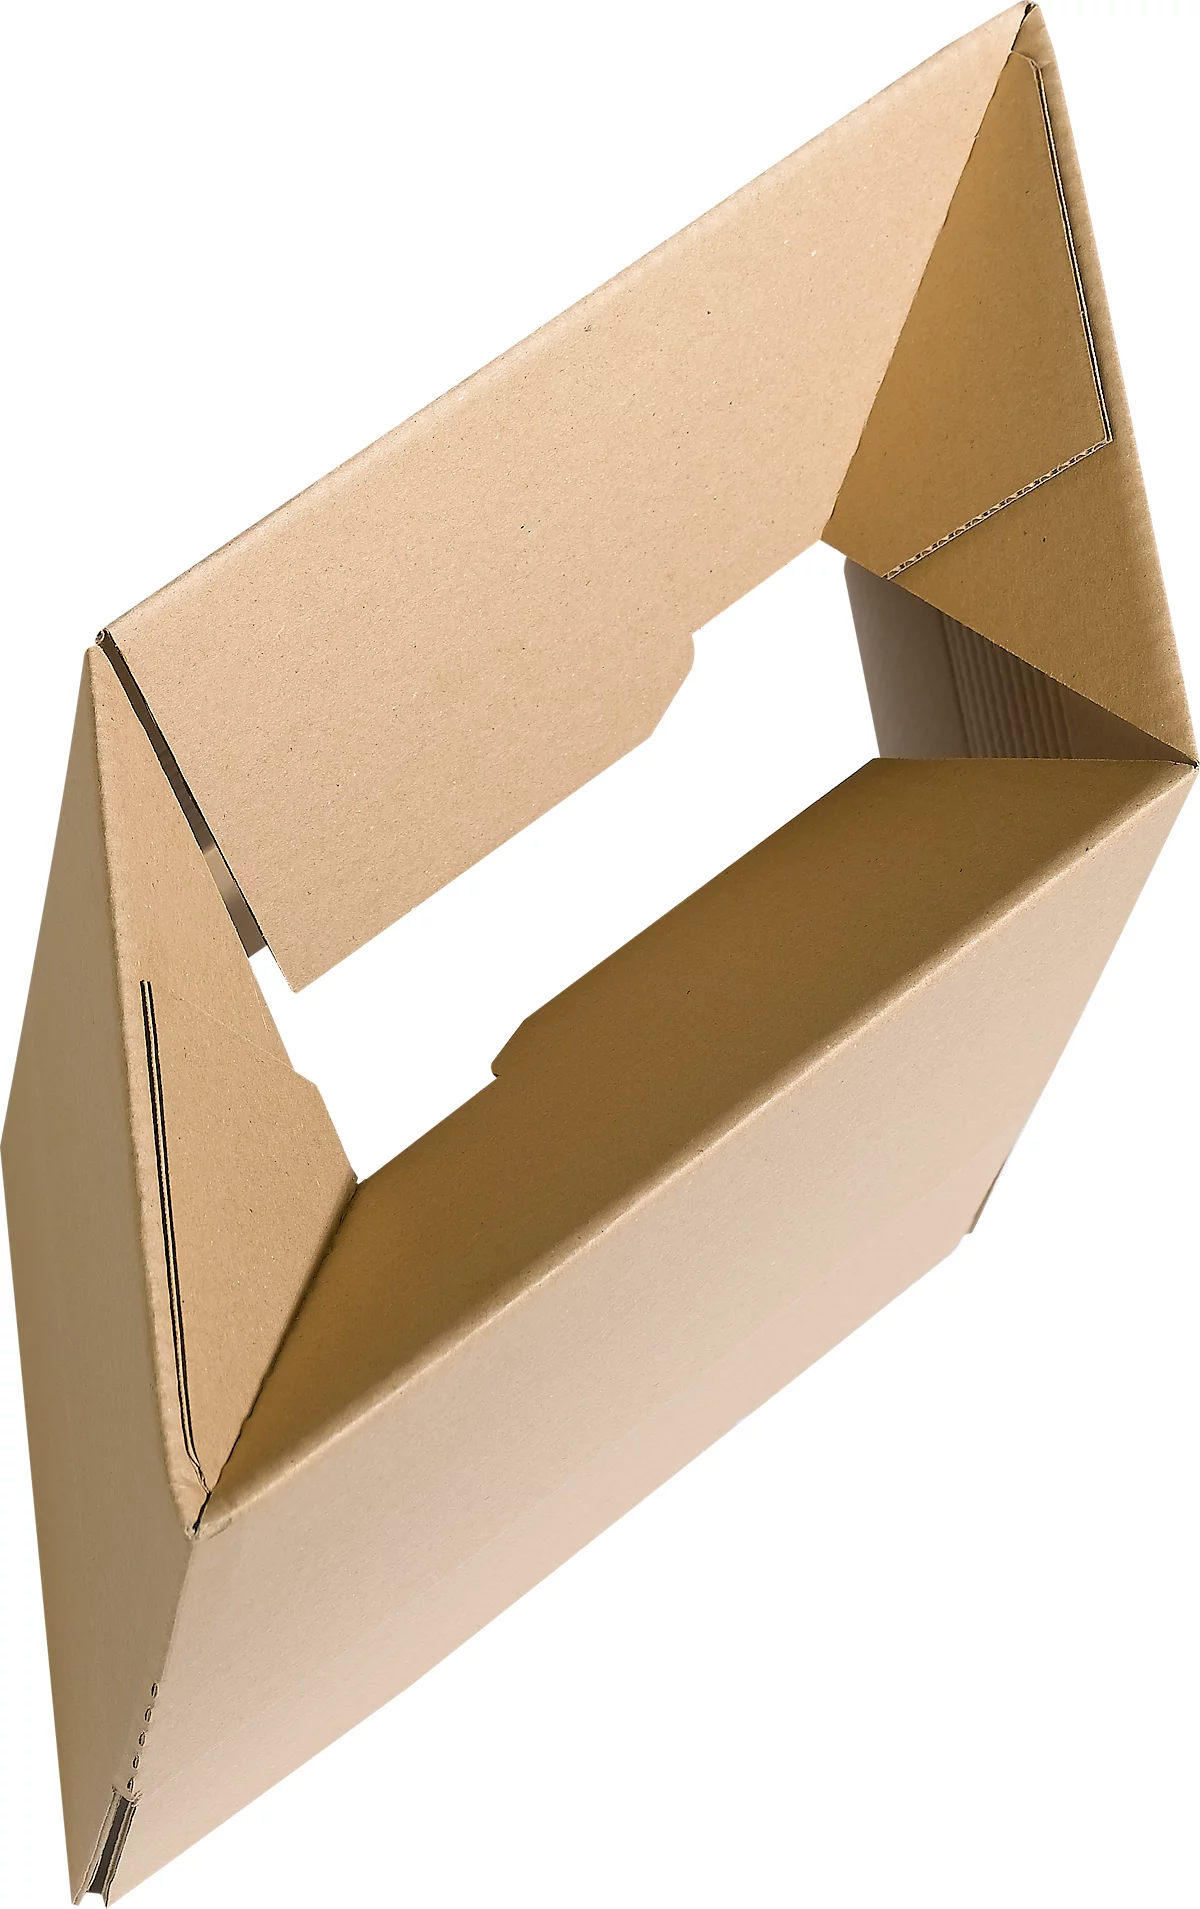 Cajas de cartón corrugado